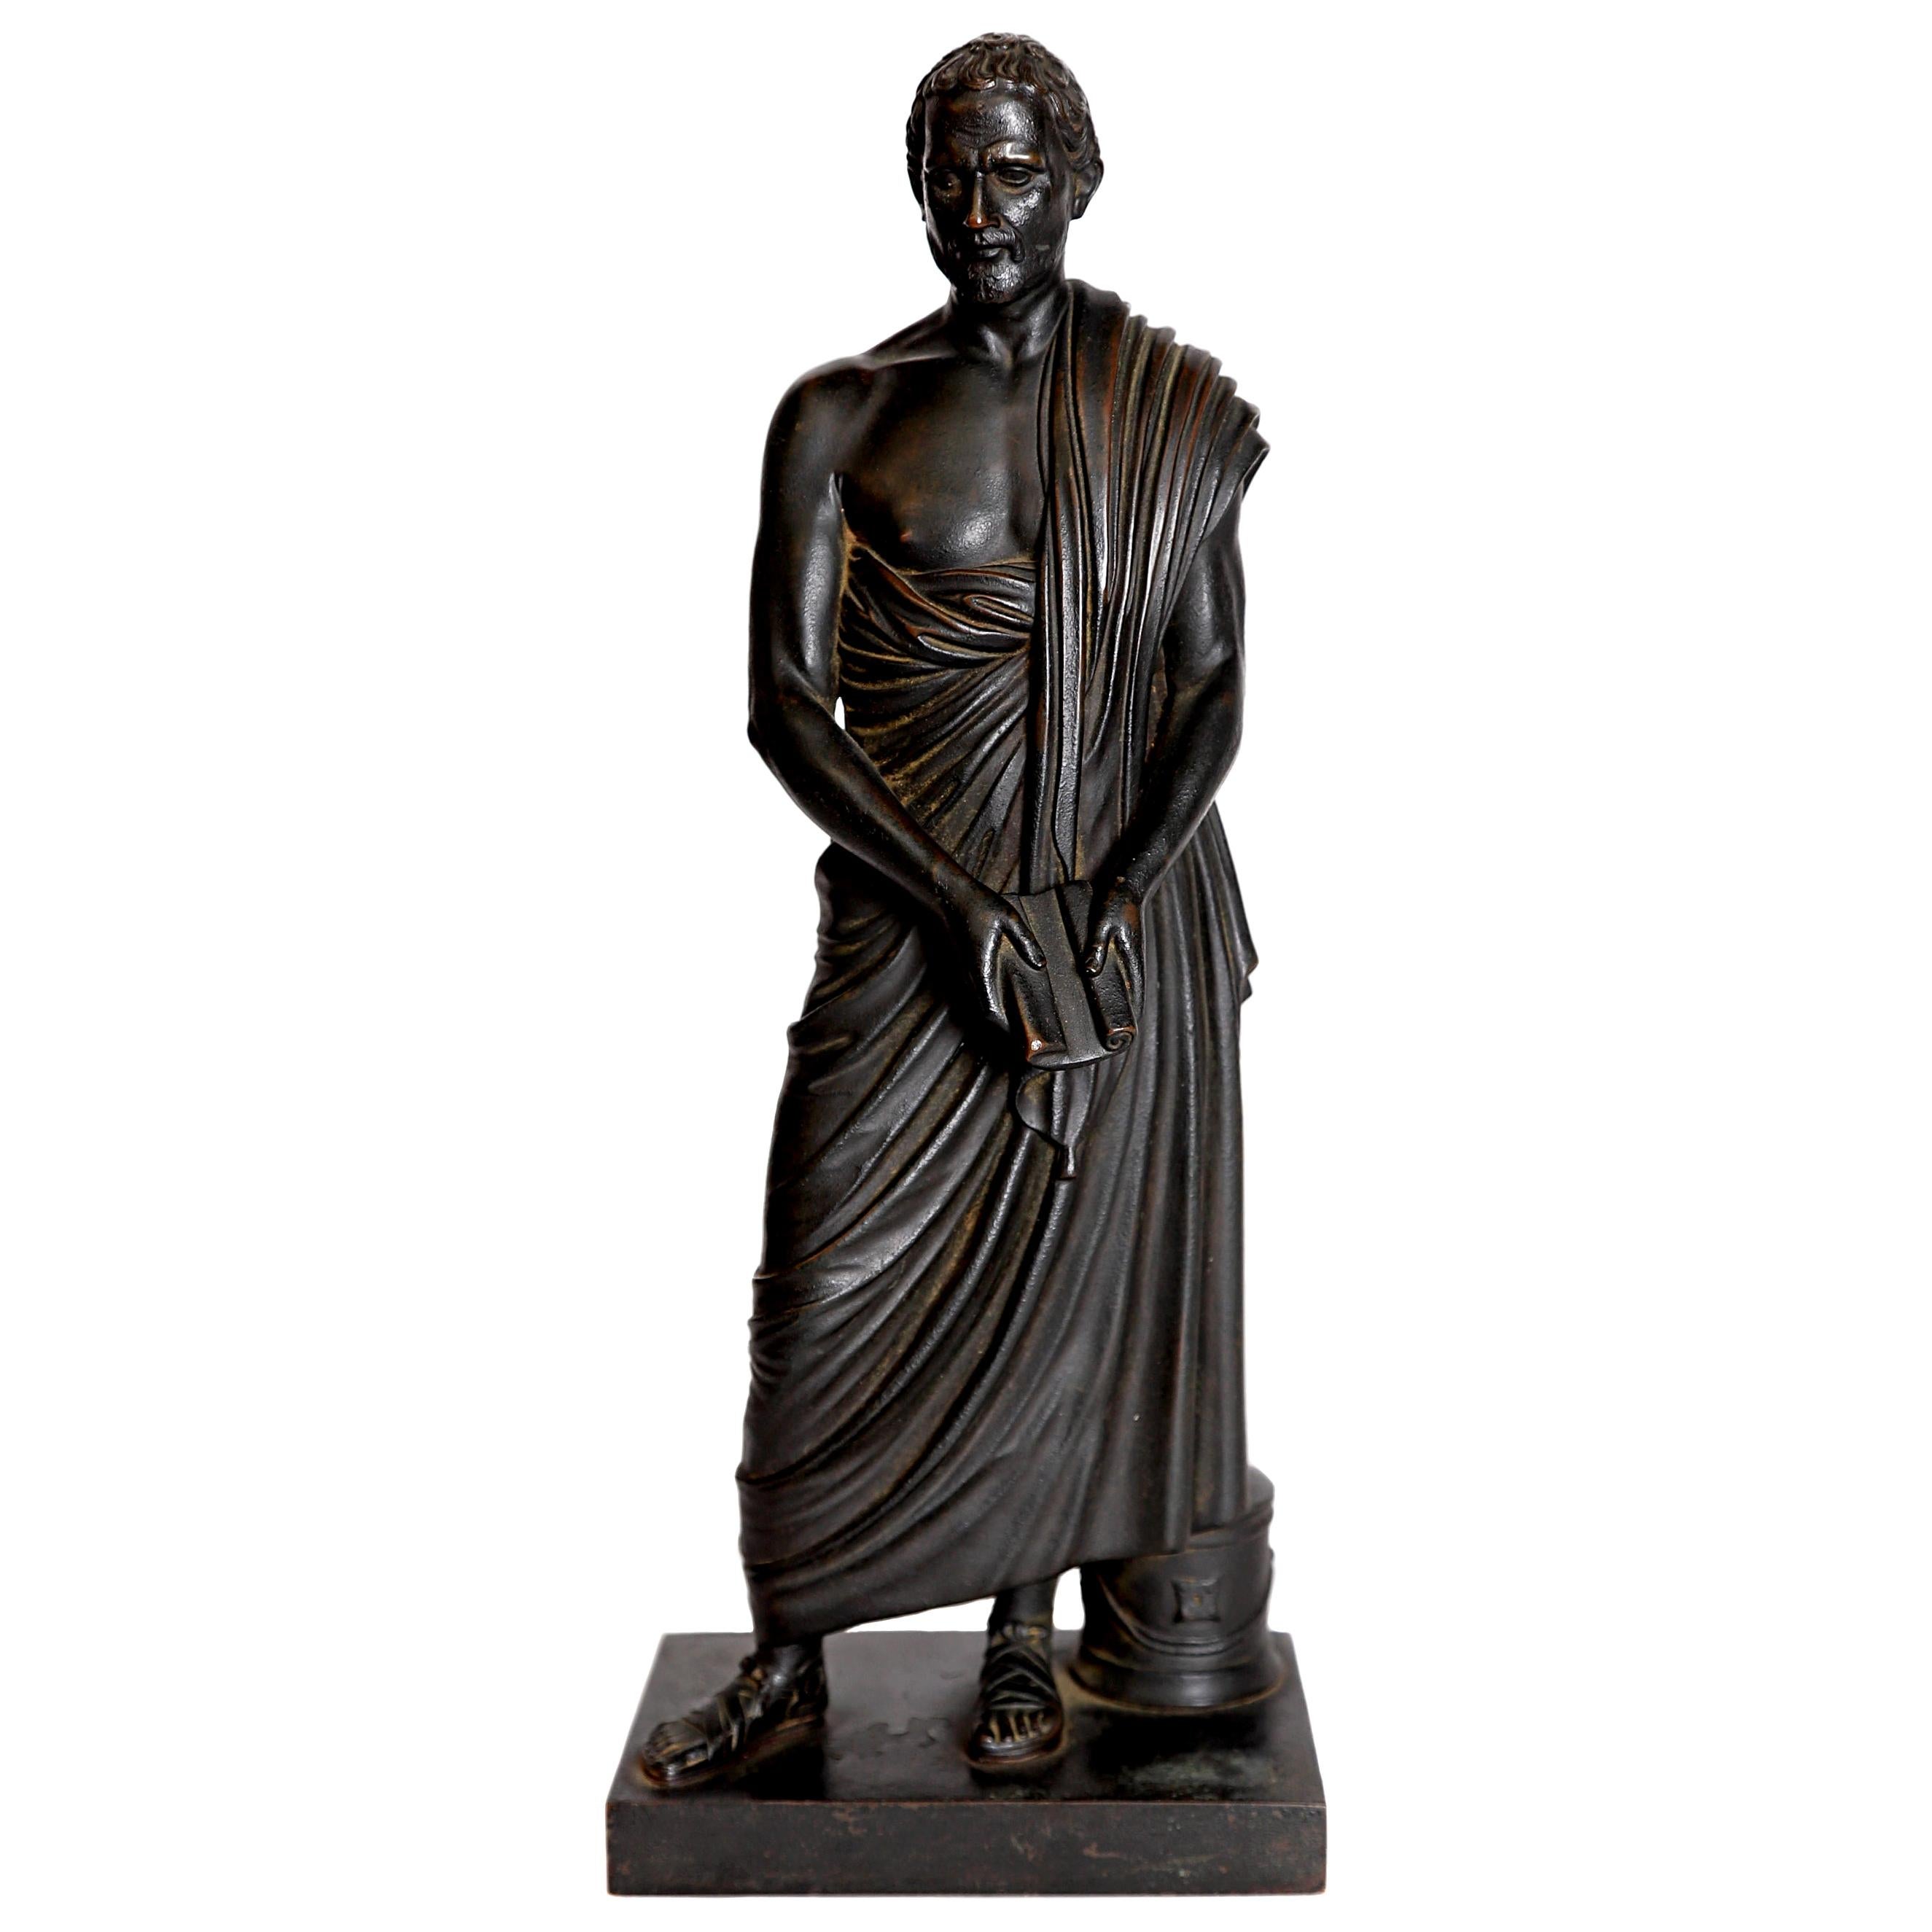 Grand Tour Souviner/Skulptur von Sophocles aus patinierter Bronze, griechischer Tragedian